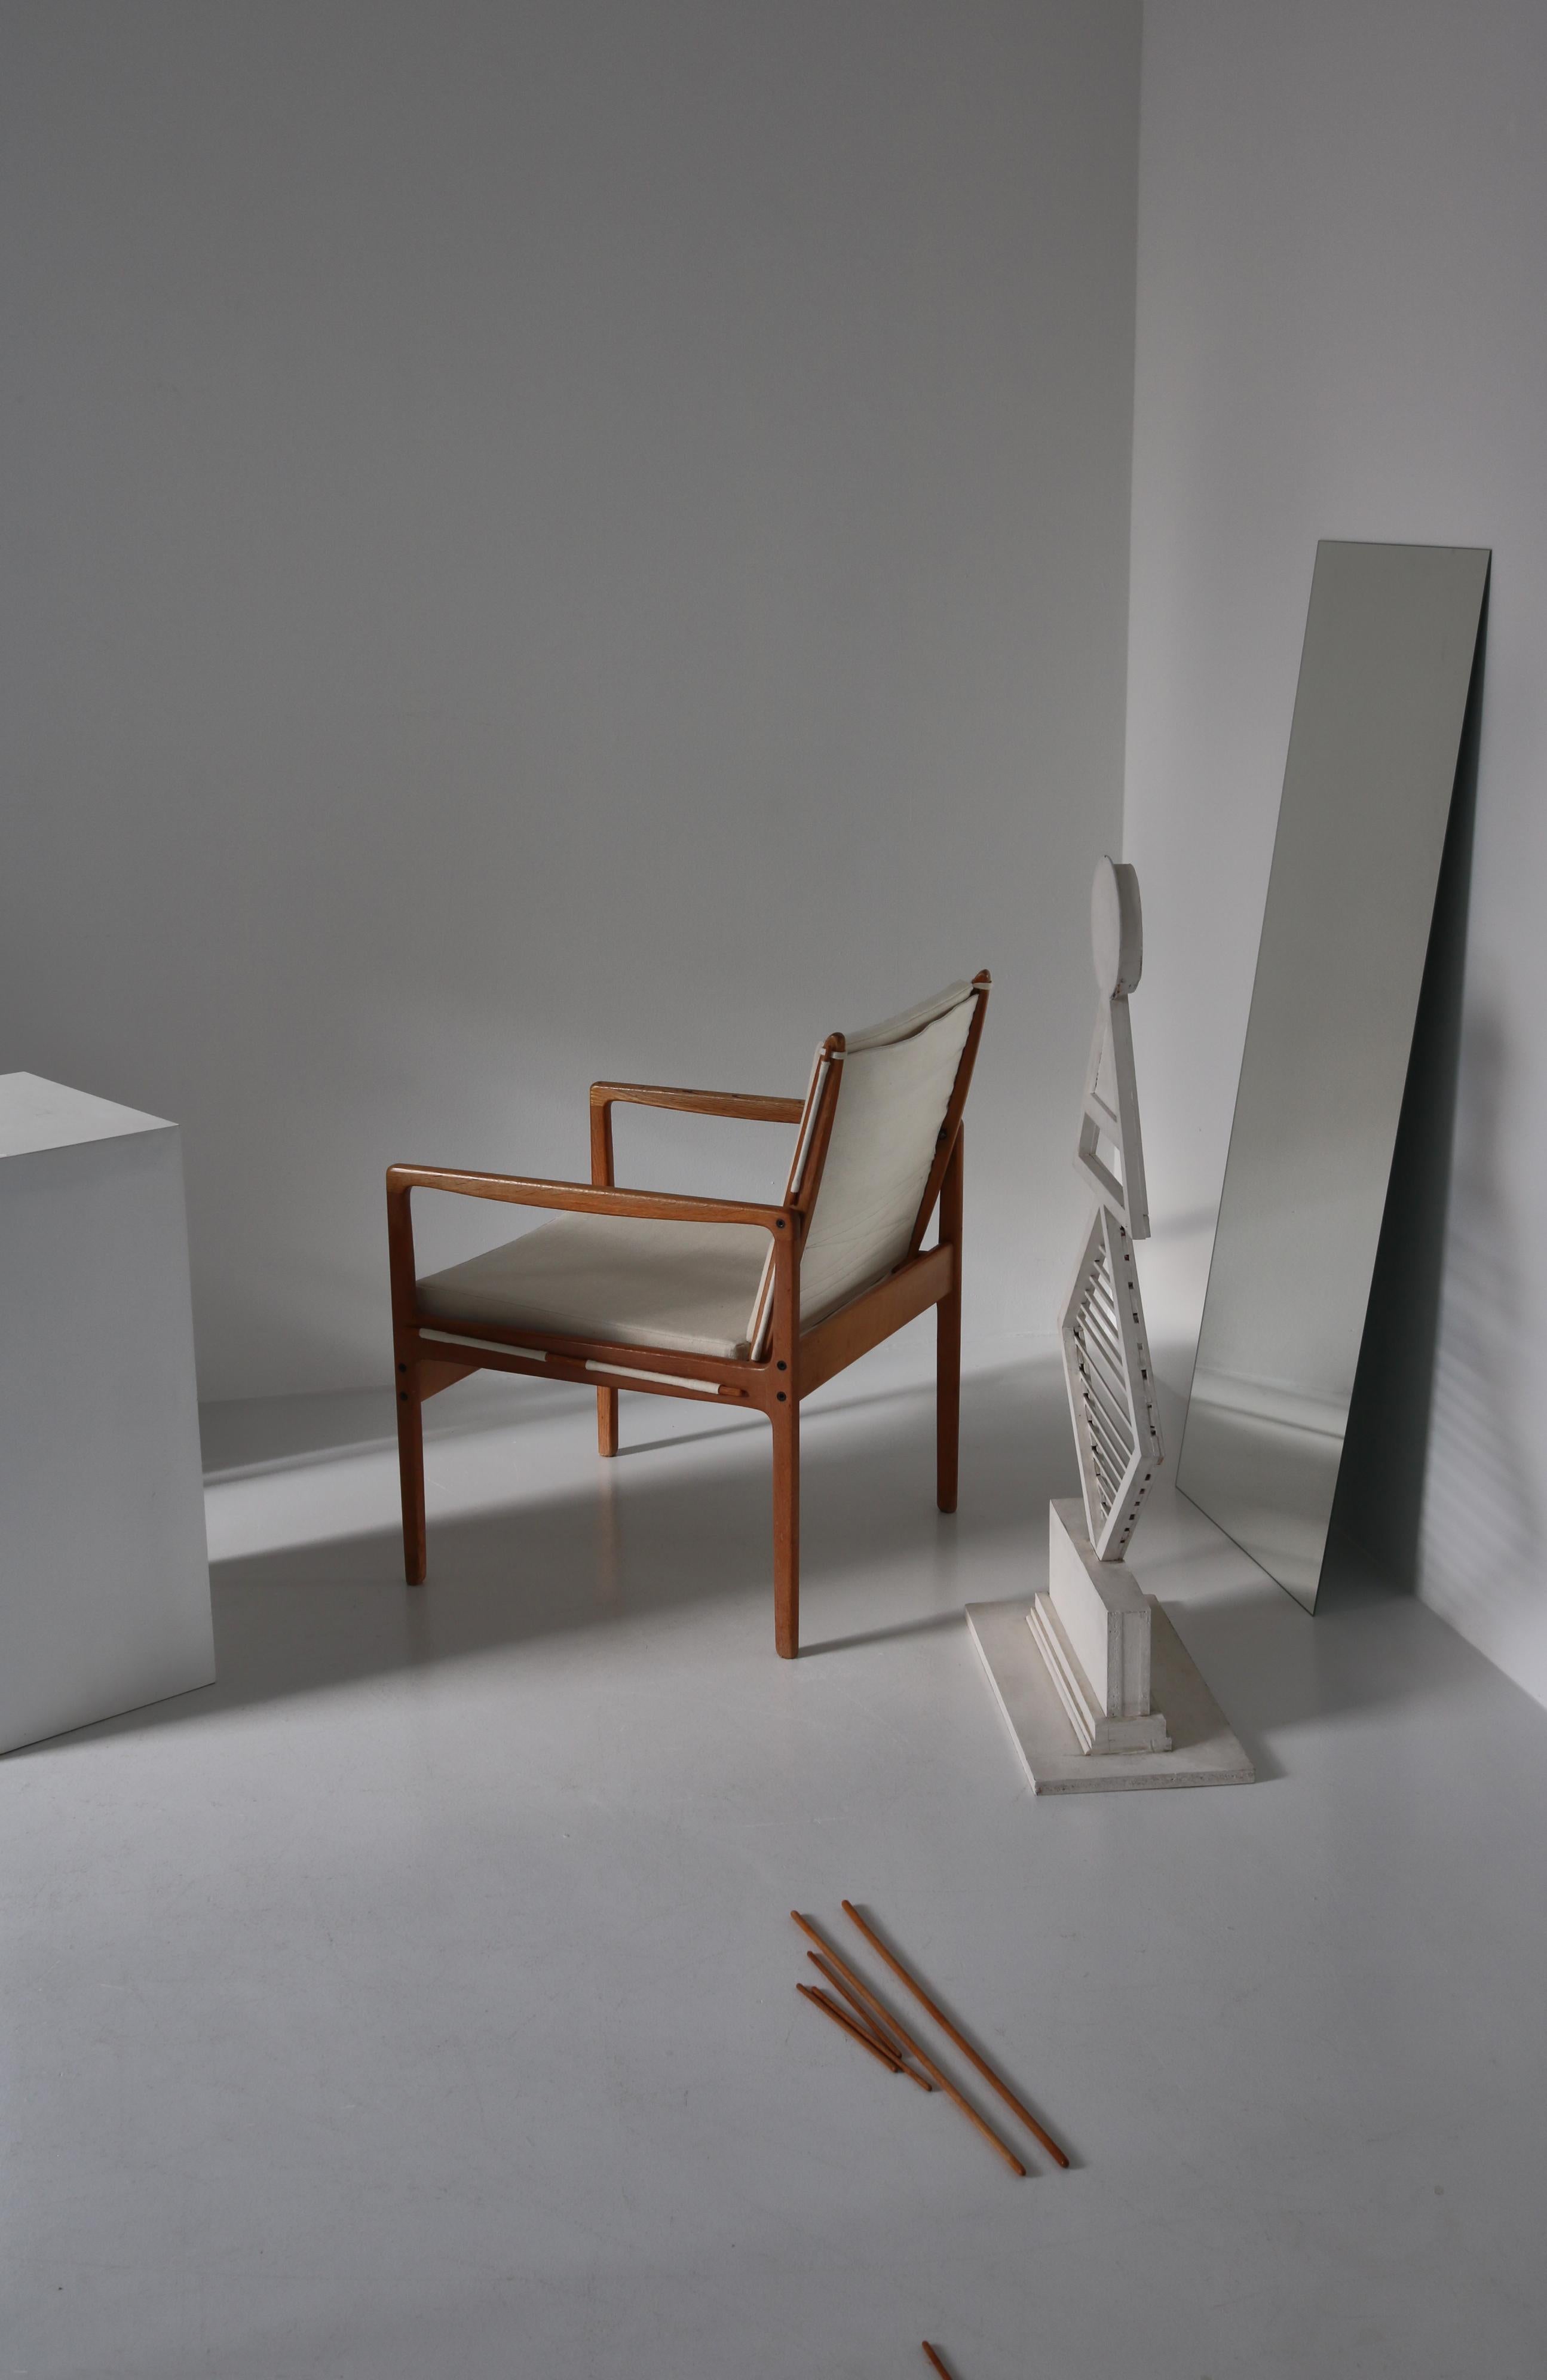 Ole Wanscher Safari Chairs in Oak & Light Canvas, Scandinavian Modern, 1960s For Sale 12